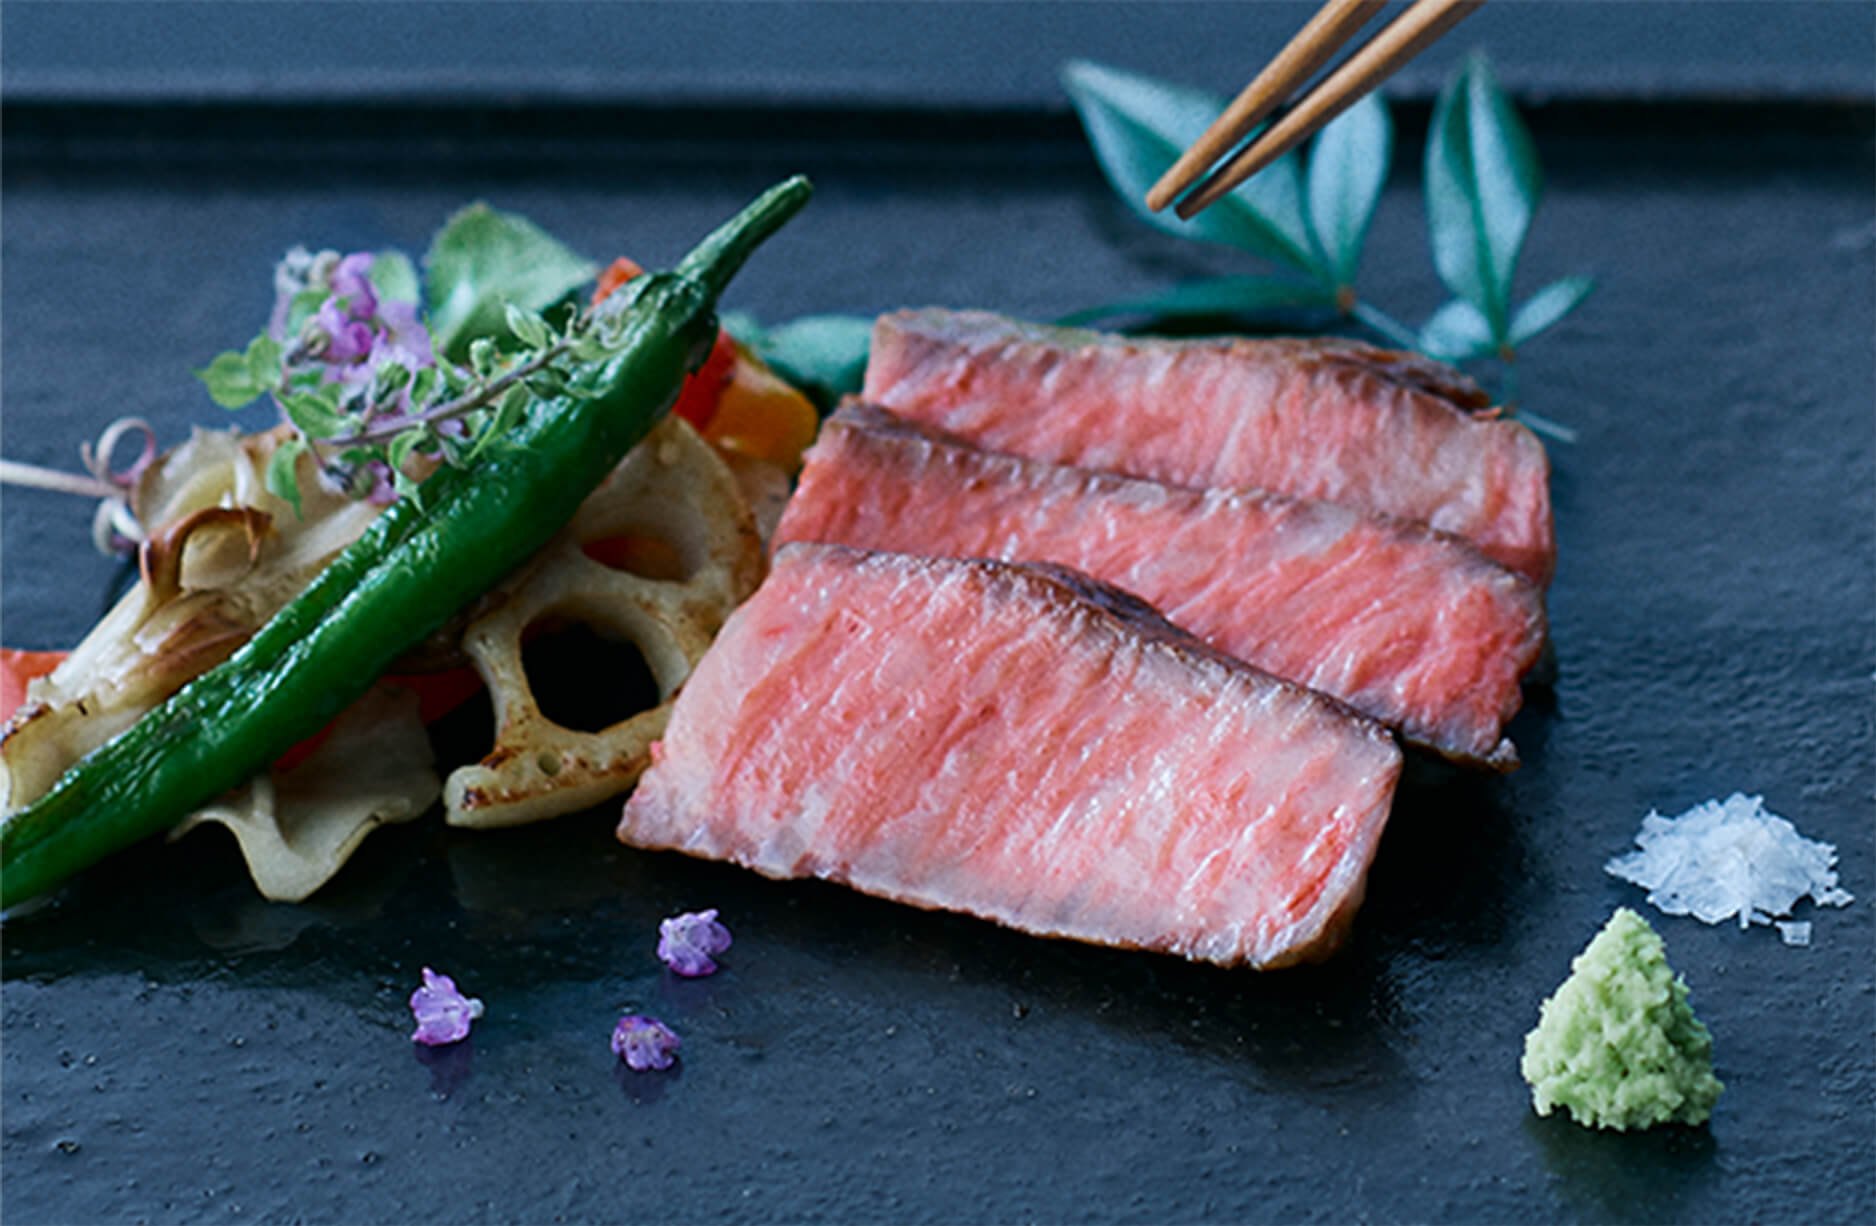 La carne Wagyu japonesa, representativa de la cultura gastronómica de Japón